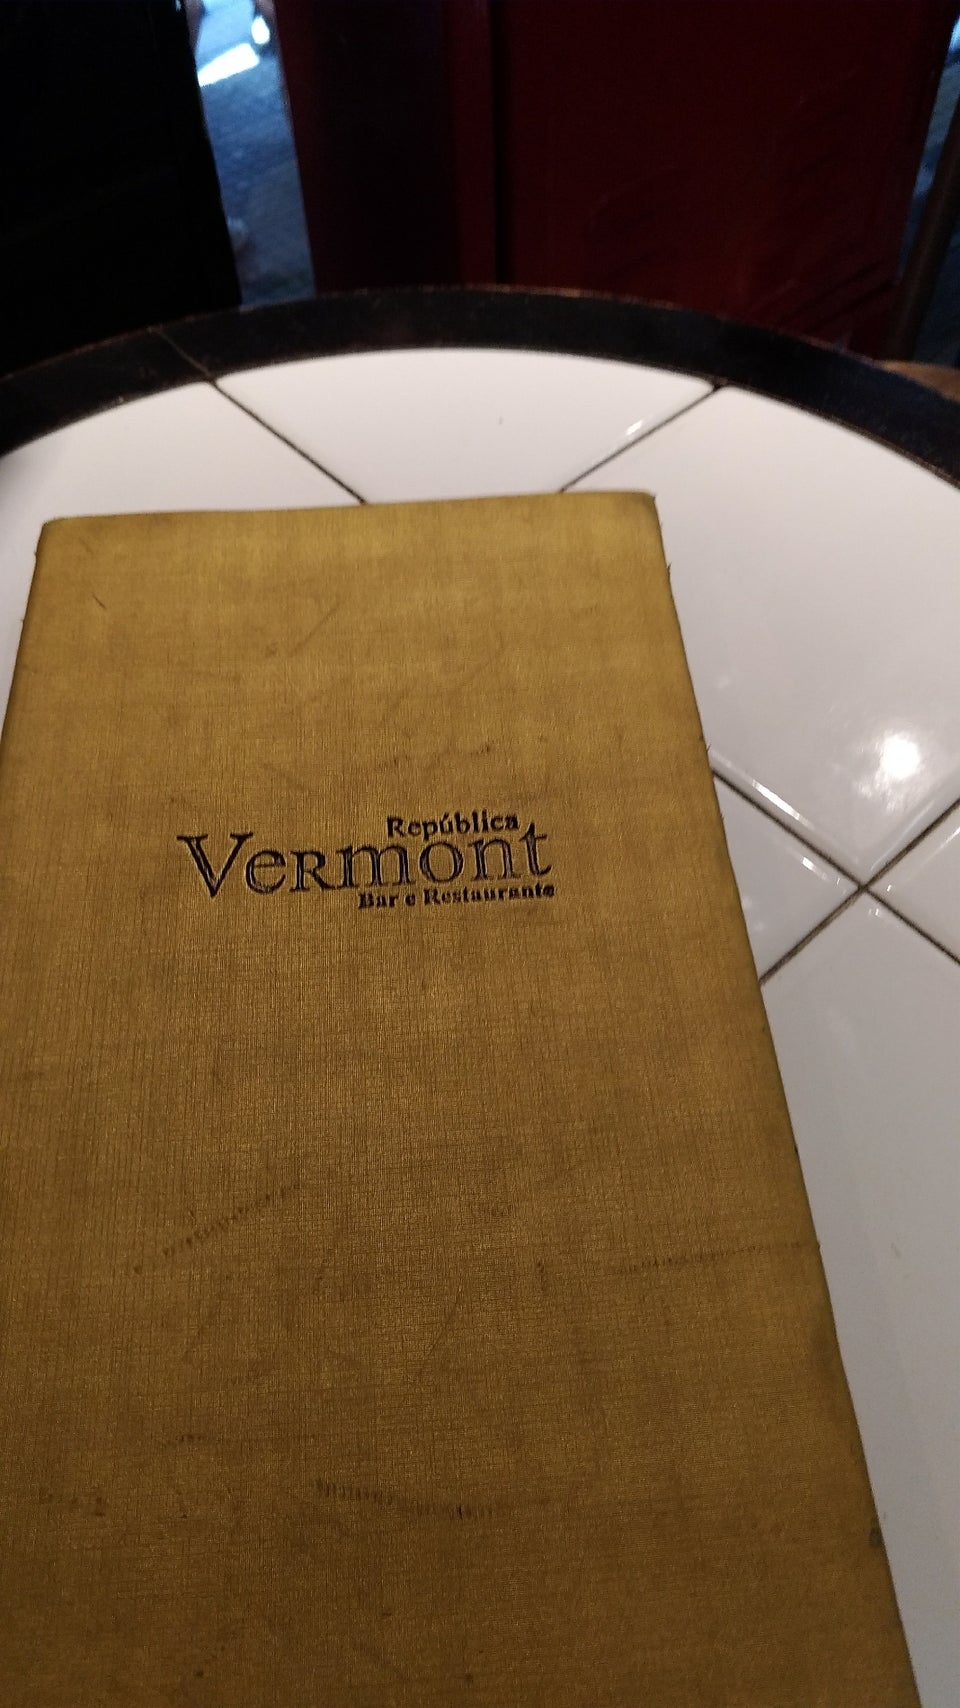 Photo of Vermont Bar e Restaurante